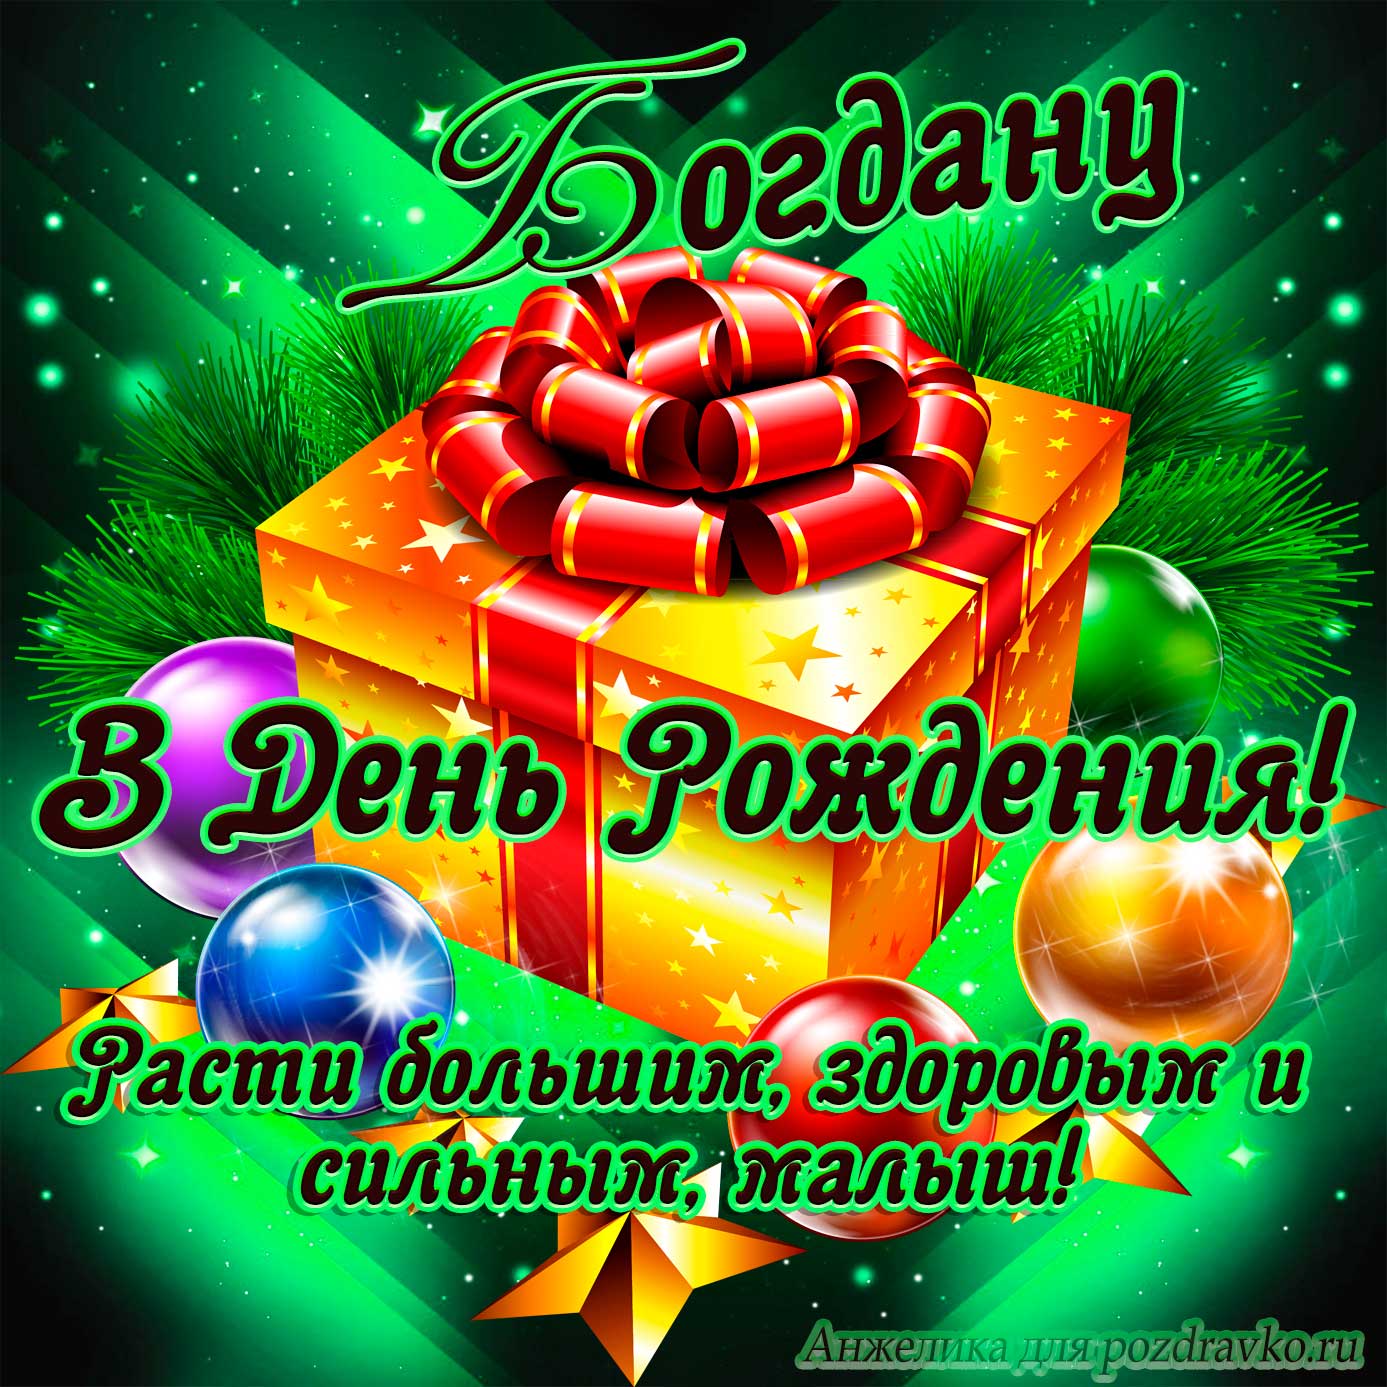 Открытка - Богдану в День Рождения, расти большим здоровым и сильным. Скачать бесплатно или отправить картинку.